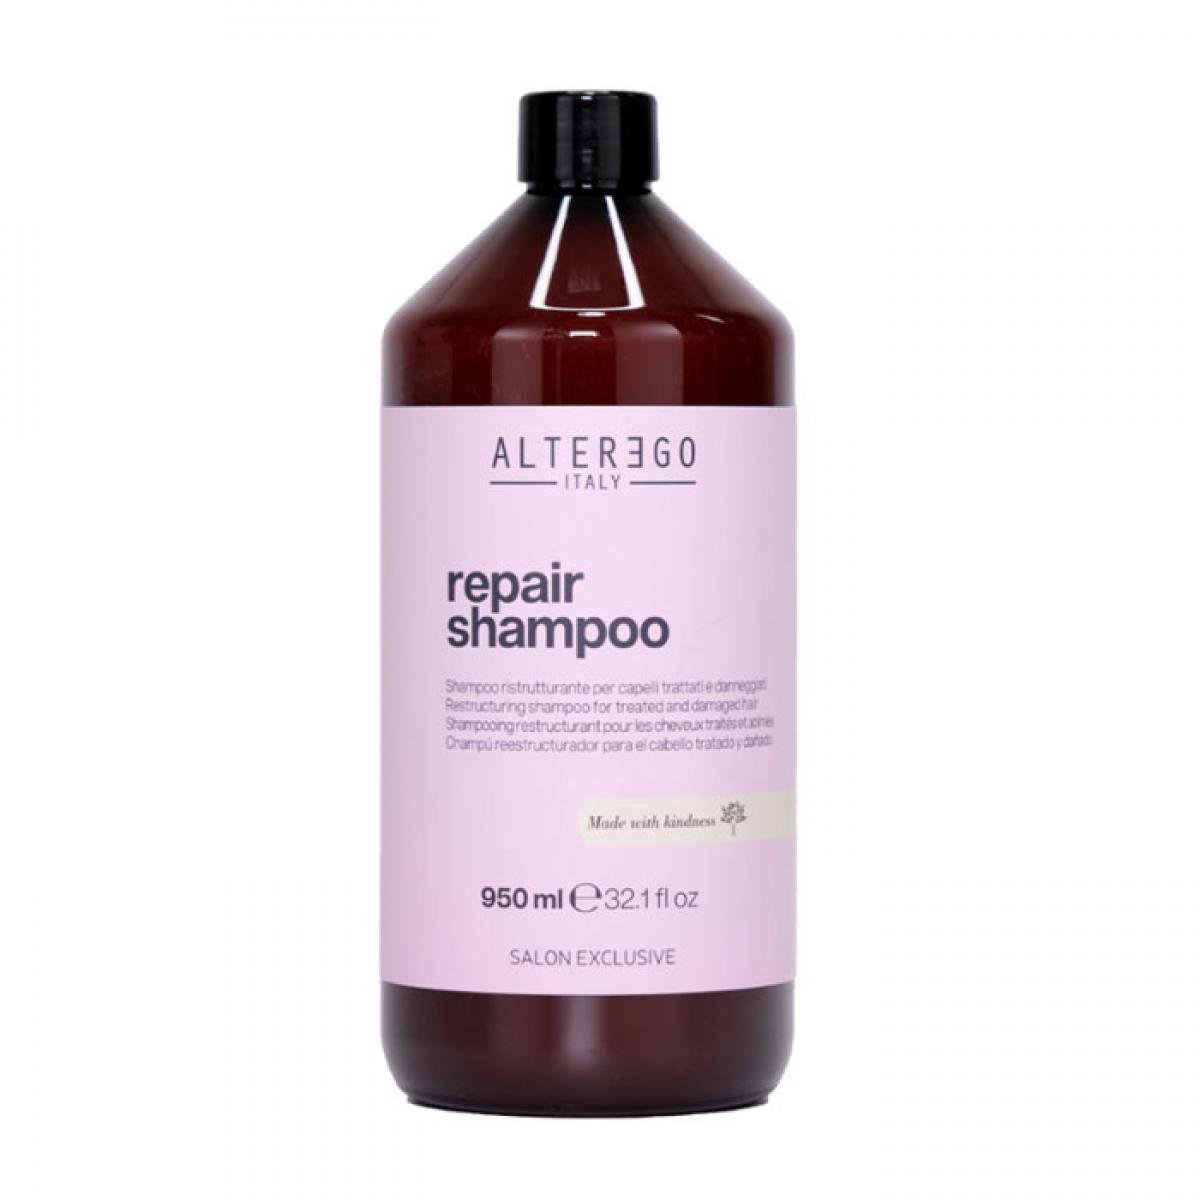 شامپو ترمیم کننده - Repair shampoo